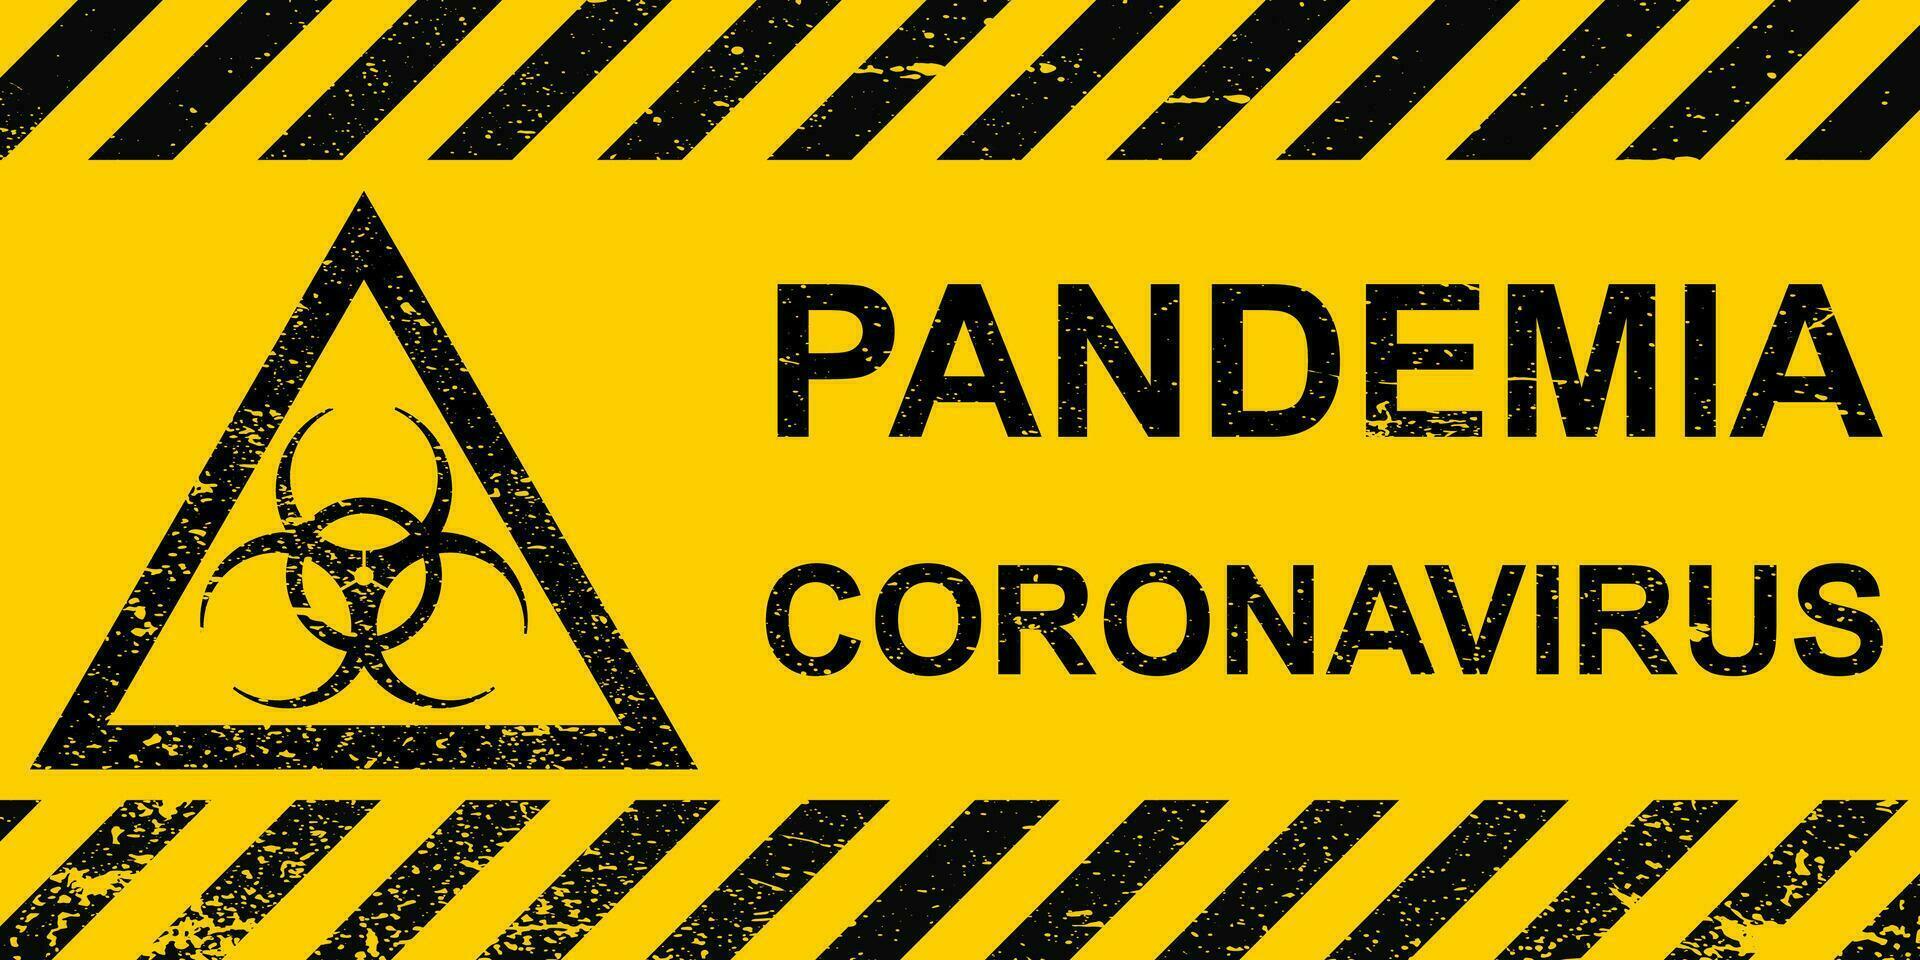 Banner pandemic coronavirus sign hazard yellow pandemic coronavirus striped banner vector